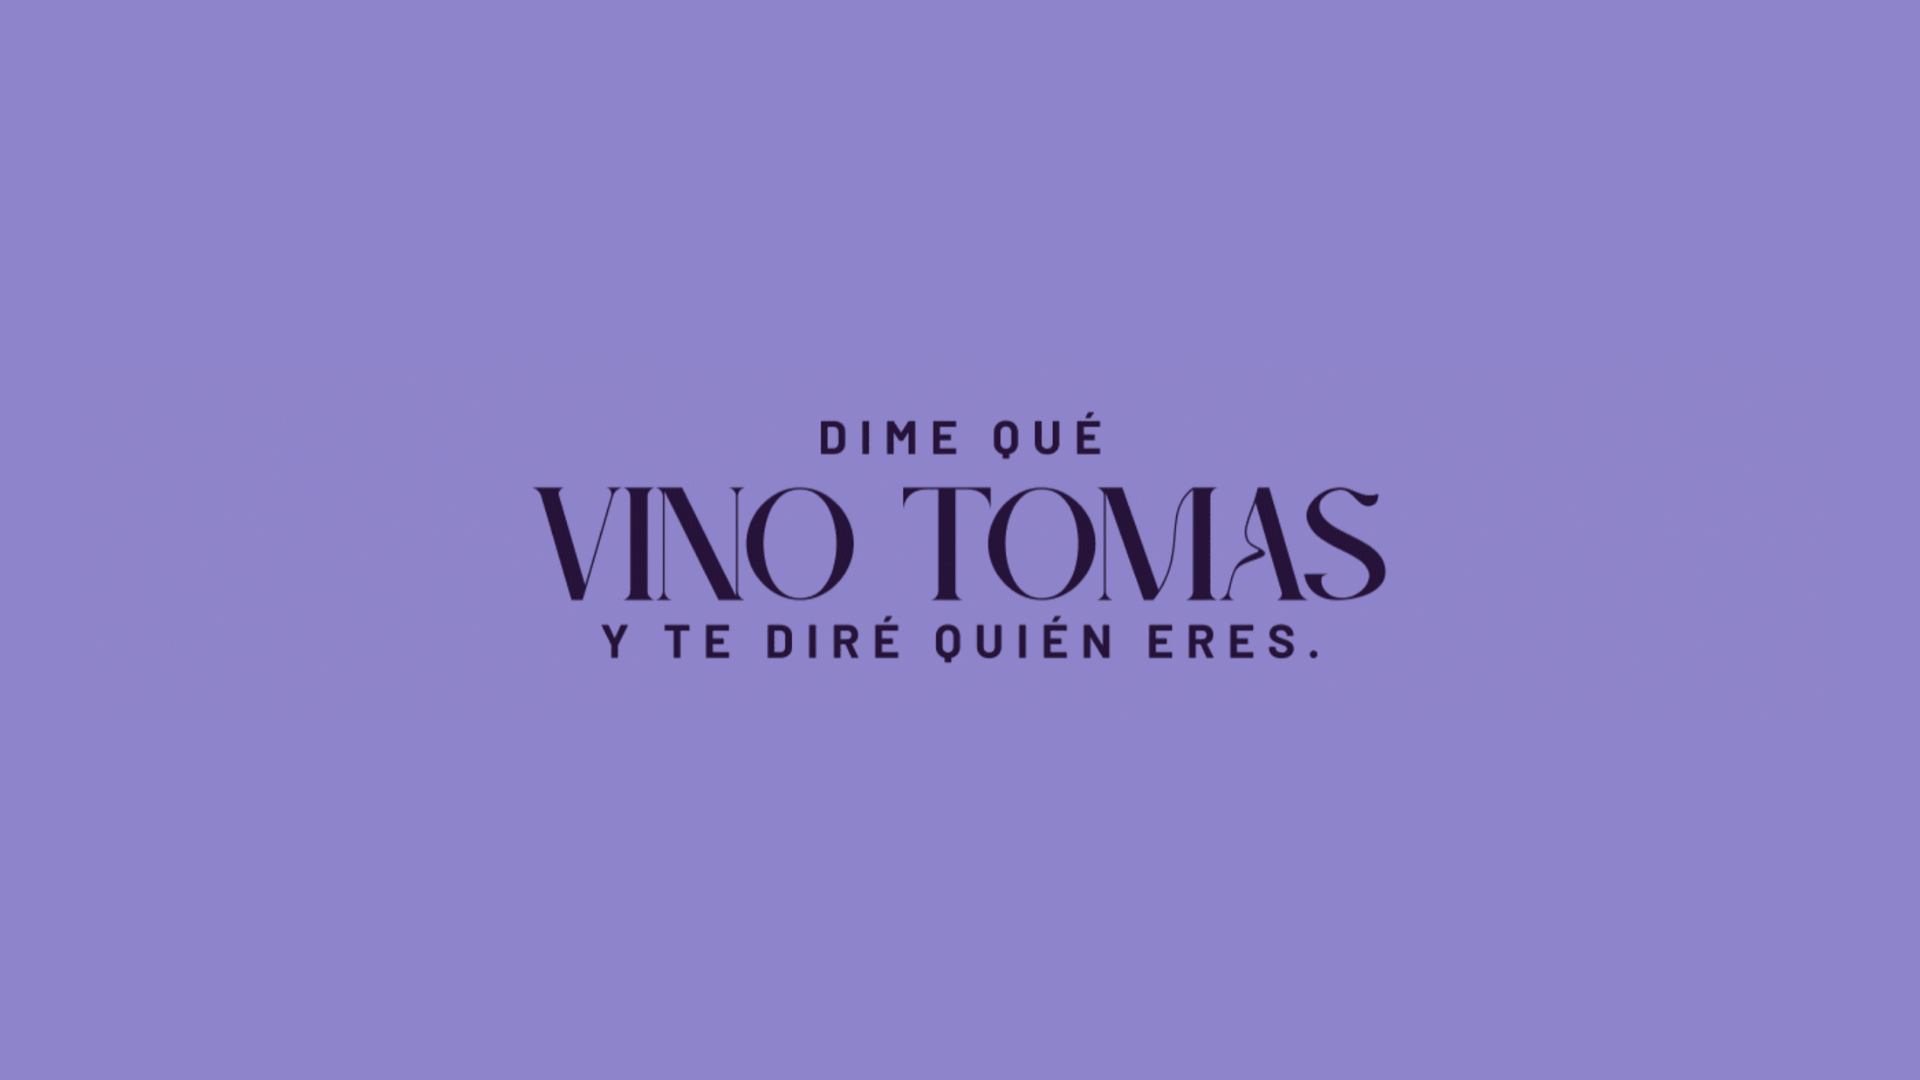 葡萄酒品牌logo设计